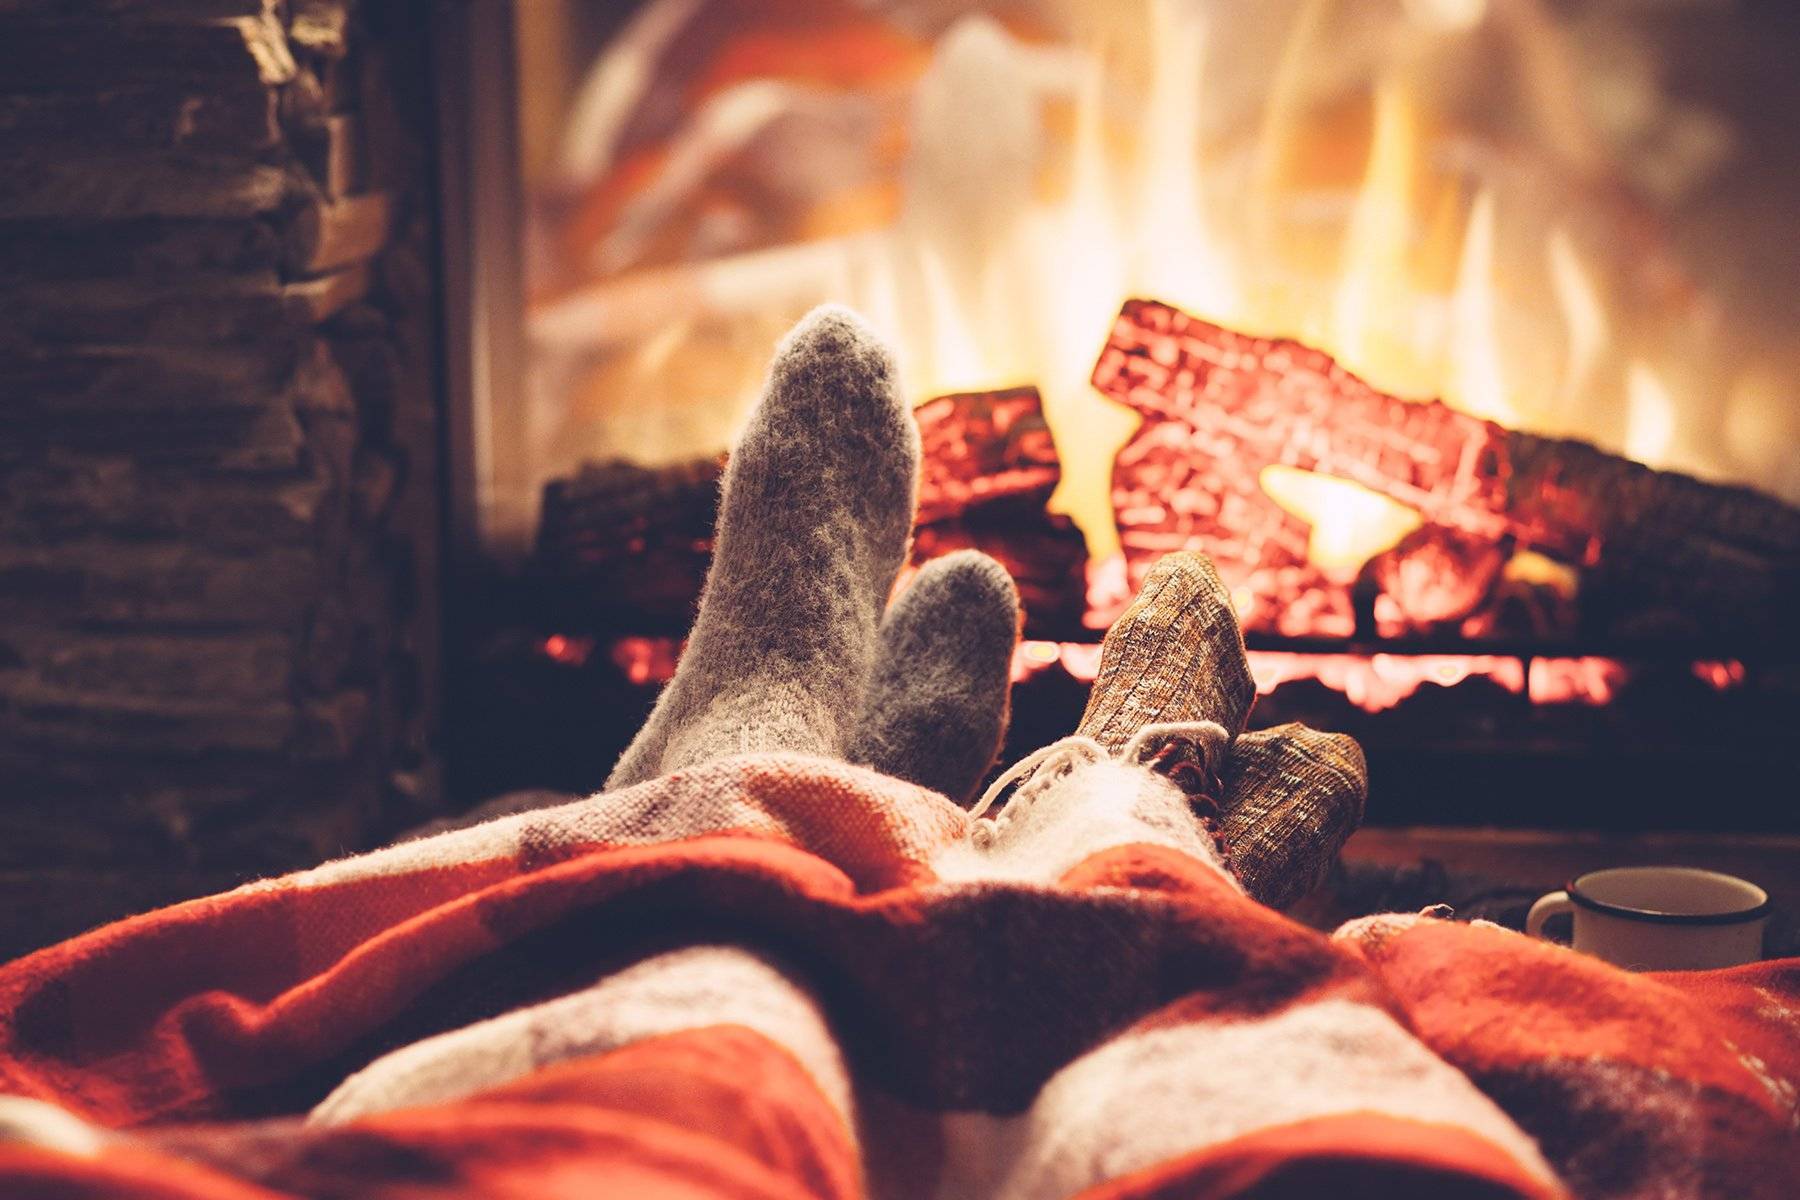 Как аромат меняет настроение дома: 5 запахов для праздника, уюта и тепла | кто?что?где?